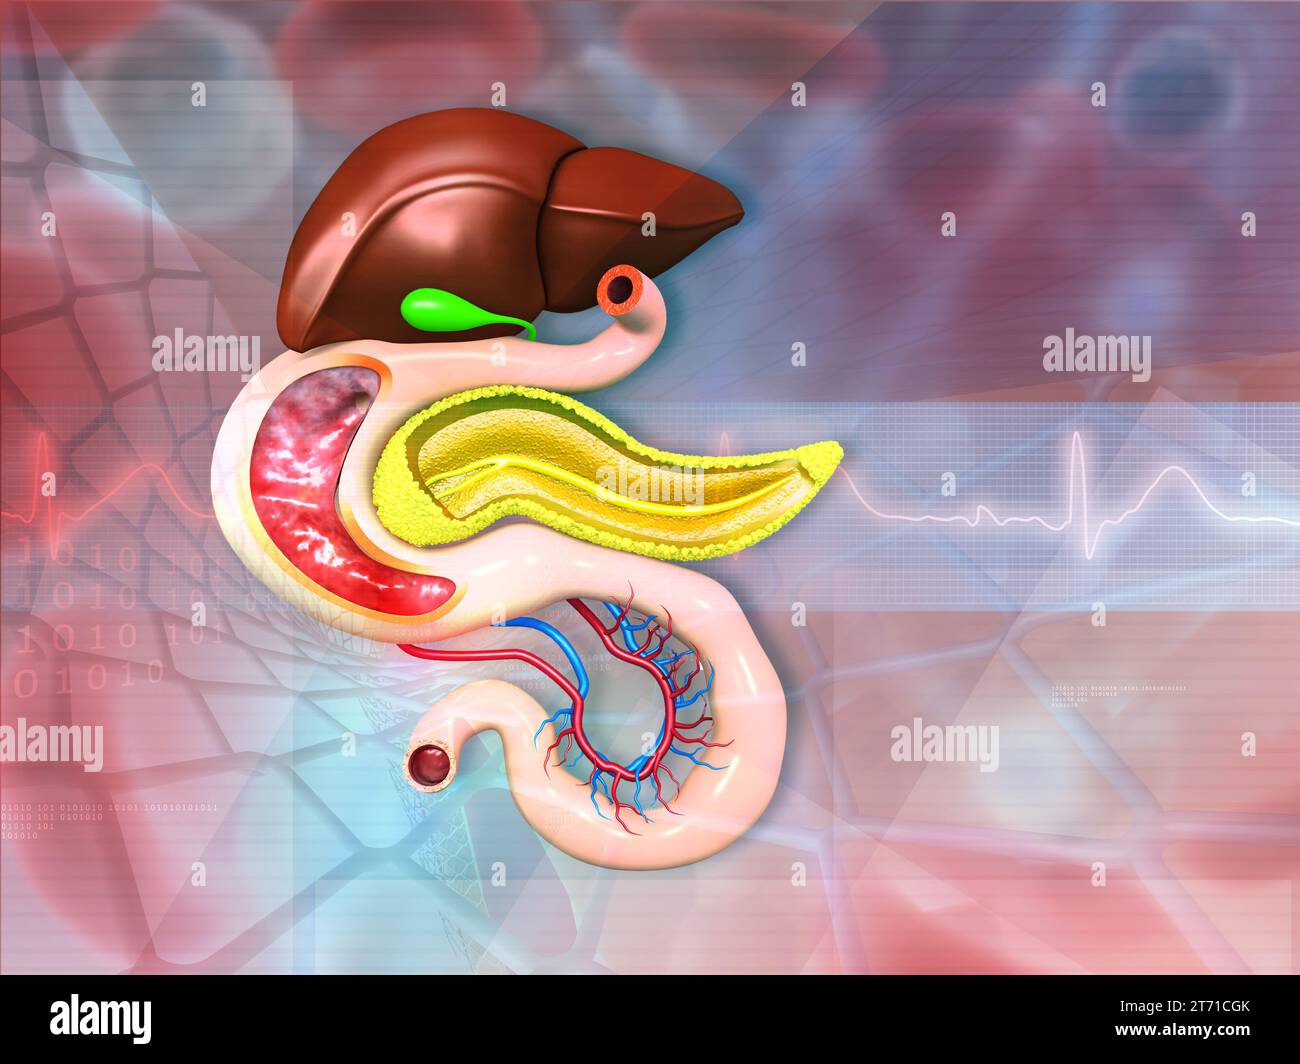 Anatomía del sistema digestivo humano en antecedentes médicos. ilustración 3d. Foto de stock